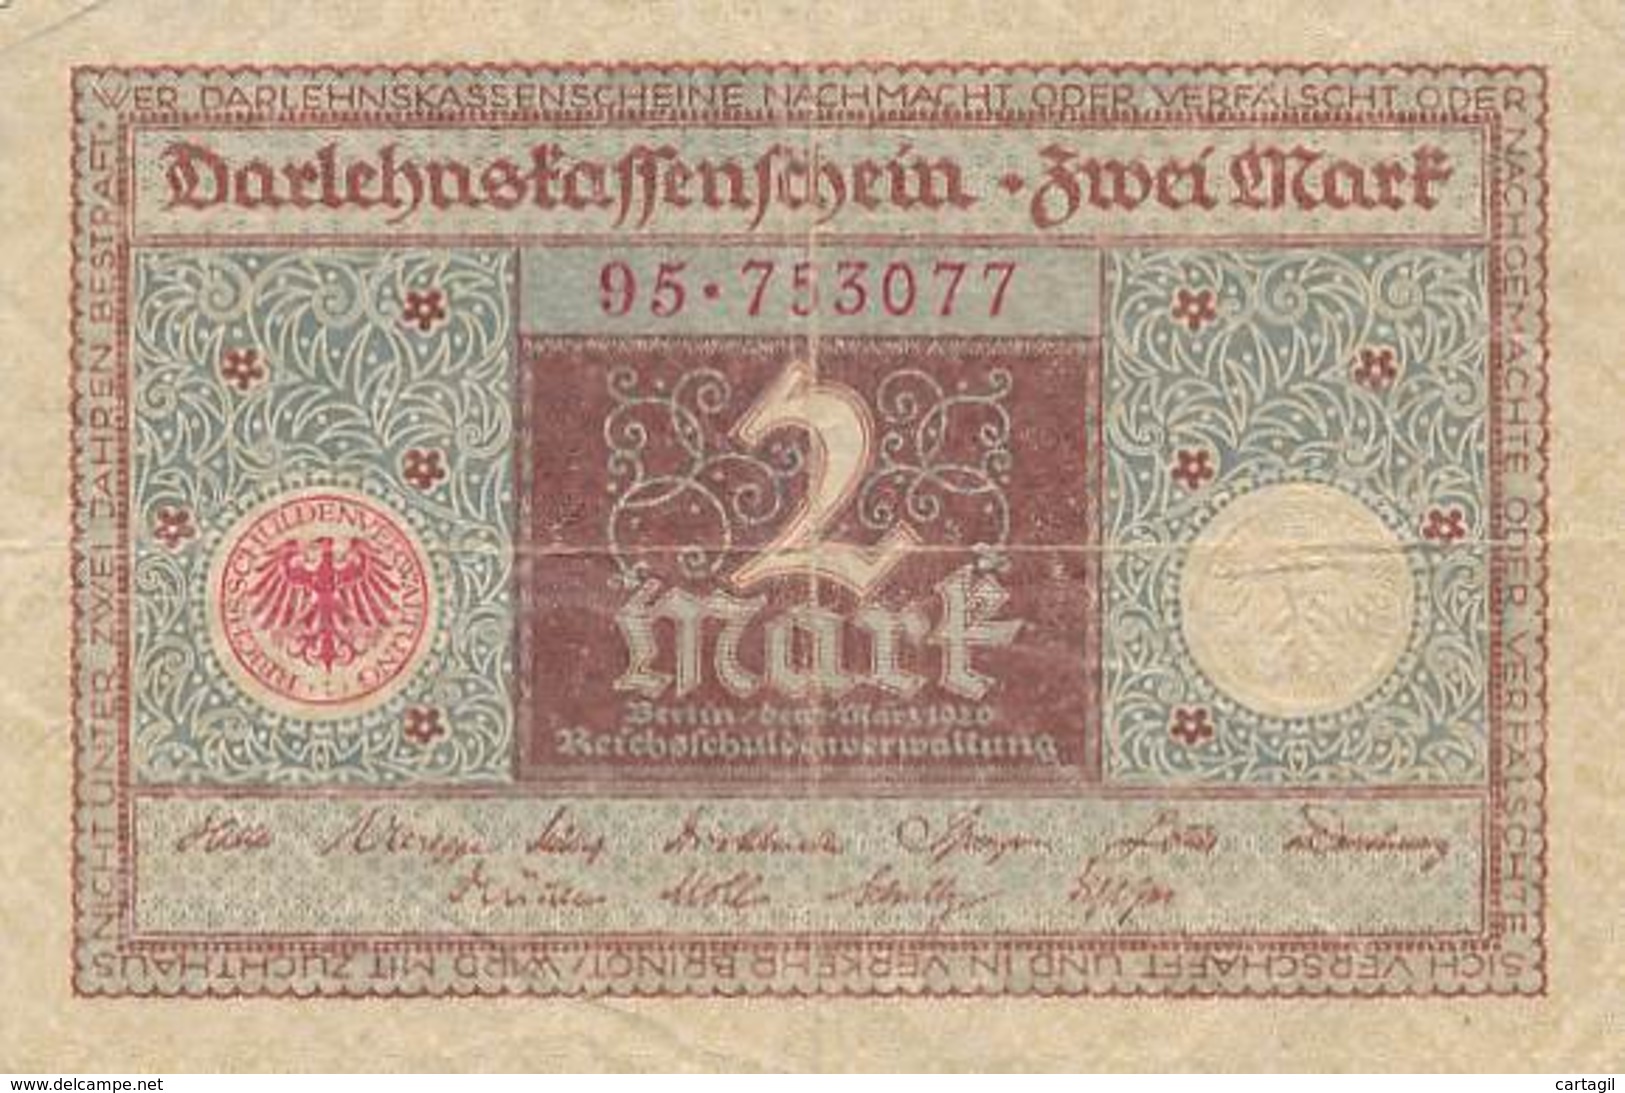 Numismatique -B3729 -Allemagne 2 Mark 1920 ( Catégorie,  Nature,  état ... Scans)-Envoi Gratuit - Reichsschuldenverwaltung